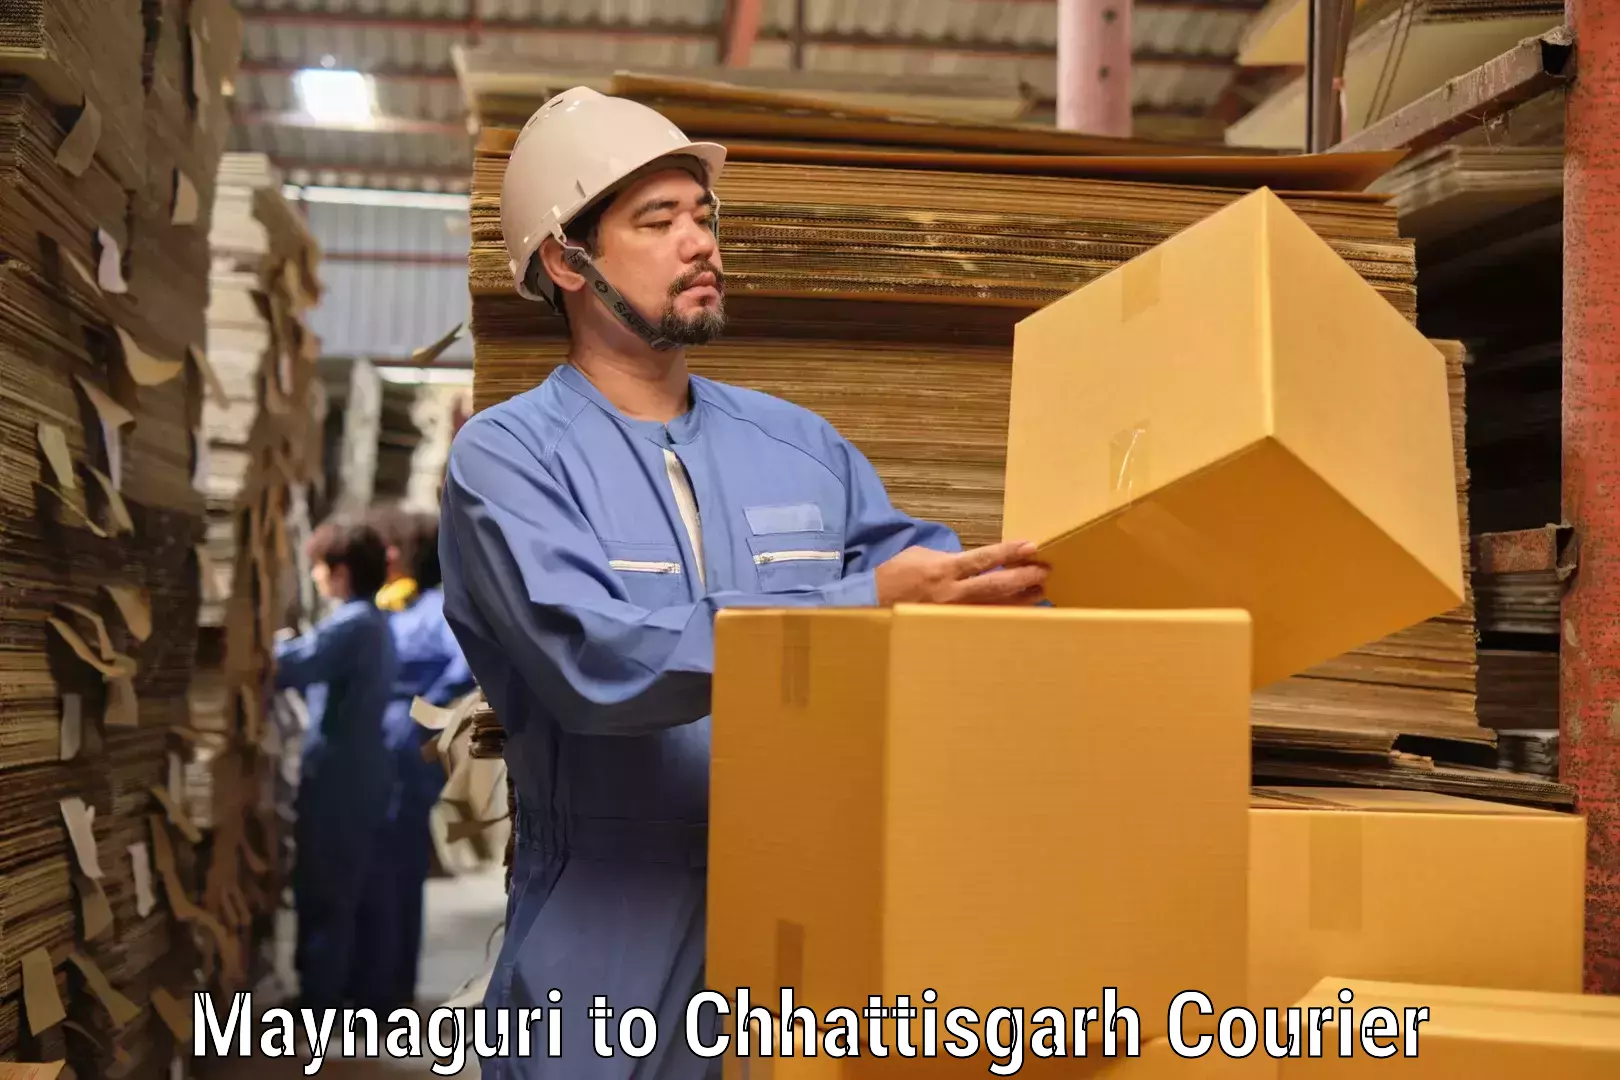 Next-generation courier services in Maynaguri to Chhattisgarh